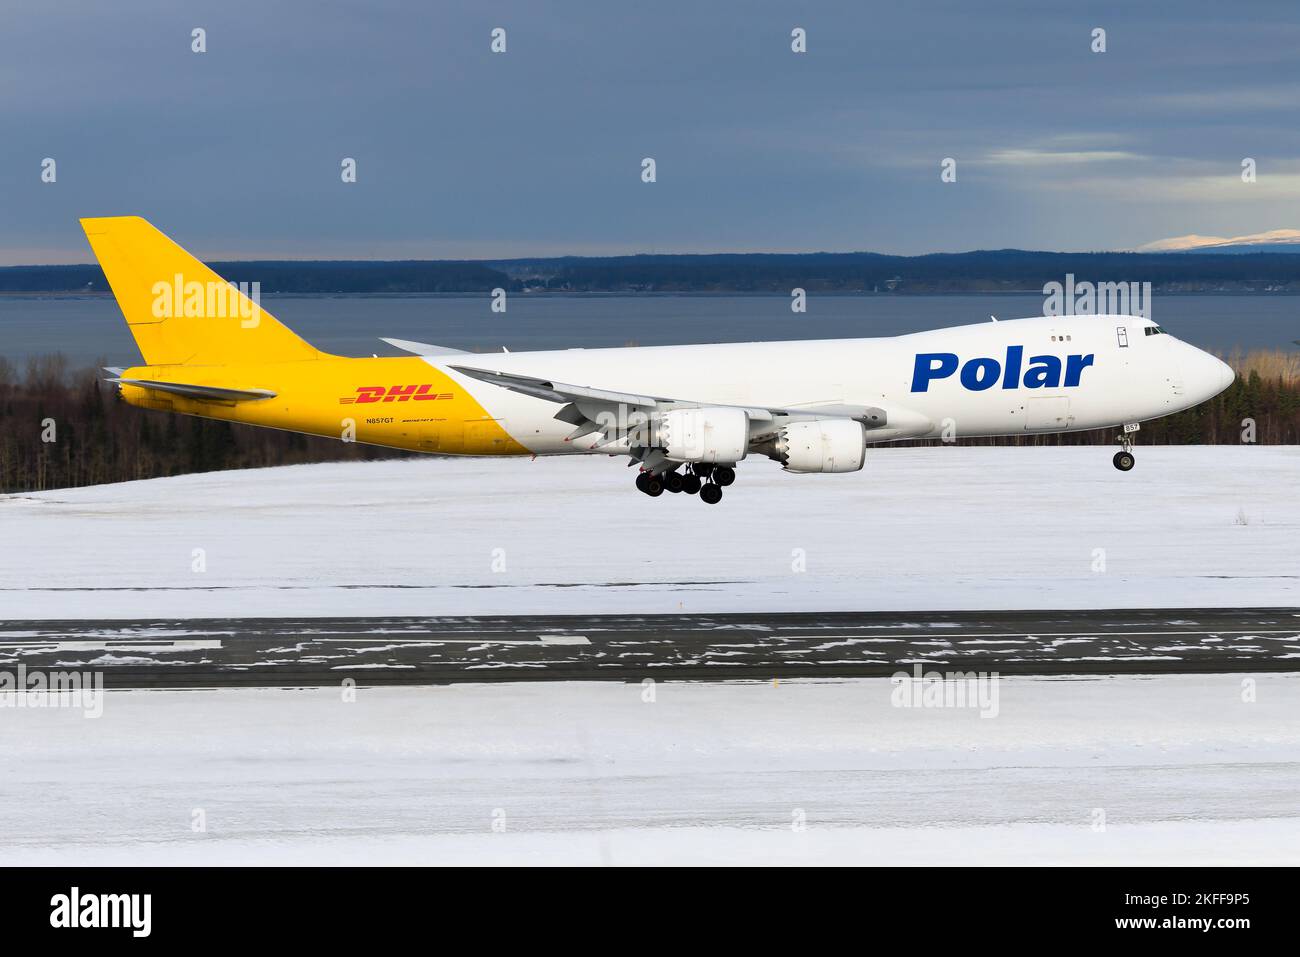 Aereo Polar Air Cargo Boeing 747-8F che atterra all'aeroporto di Anchorage. Aereo 747-8 per il trasporto di merci di Polar Air. Piano N857GT. Foto Stock